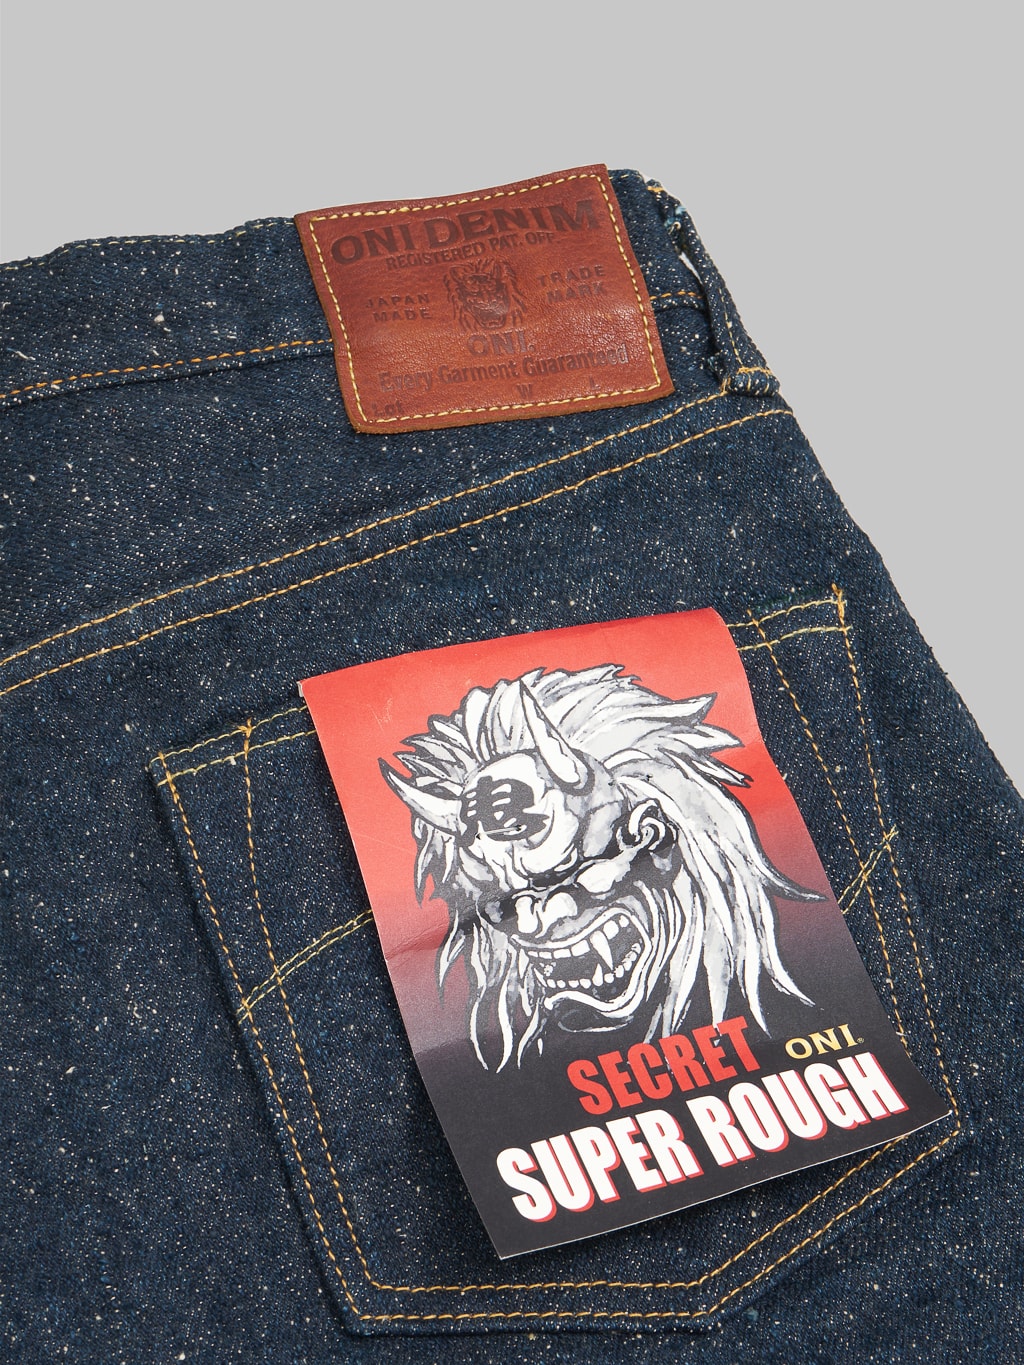 ONI 622 Secret Super Rough 20oz Jeans back details